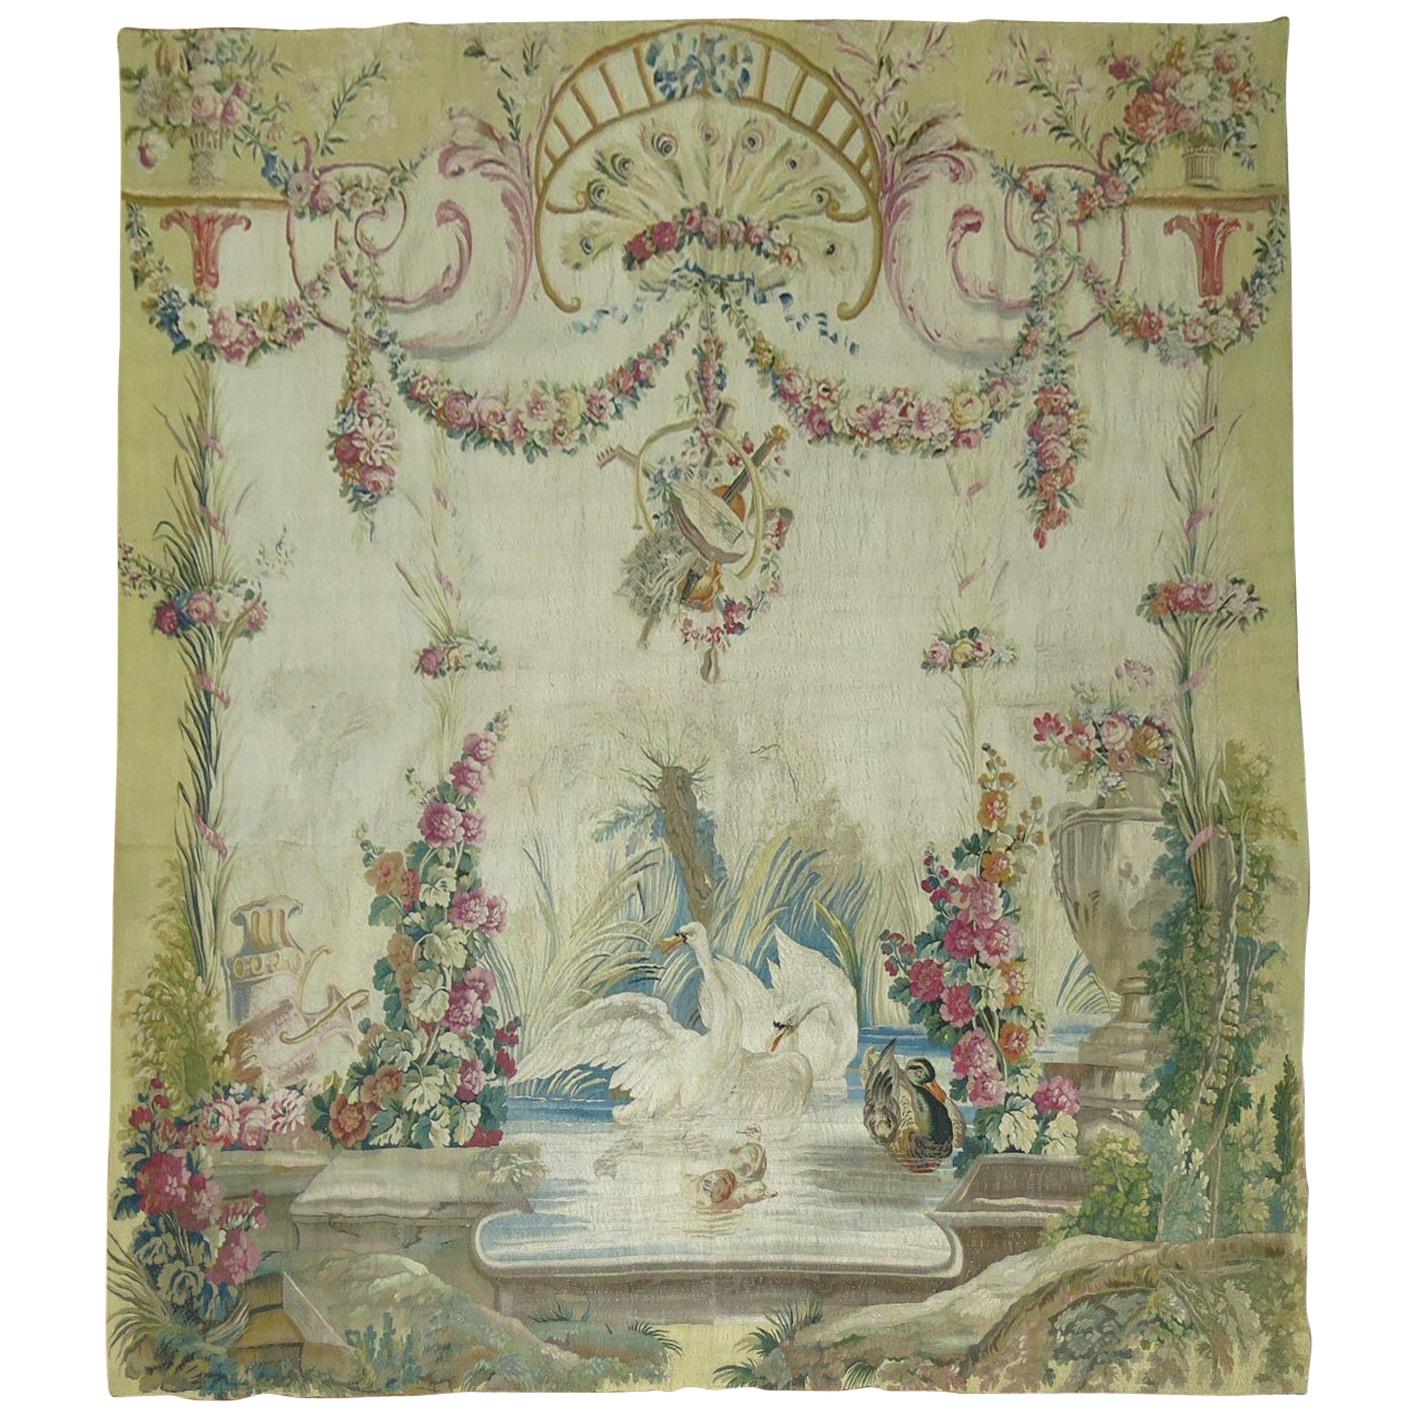 Panneau de tapisserie français d'Aubusson du 18ème siècle